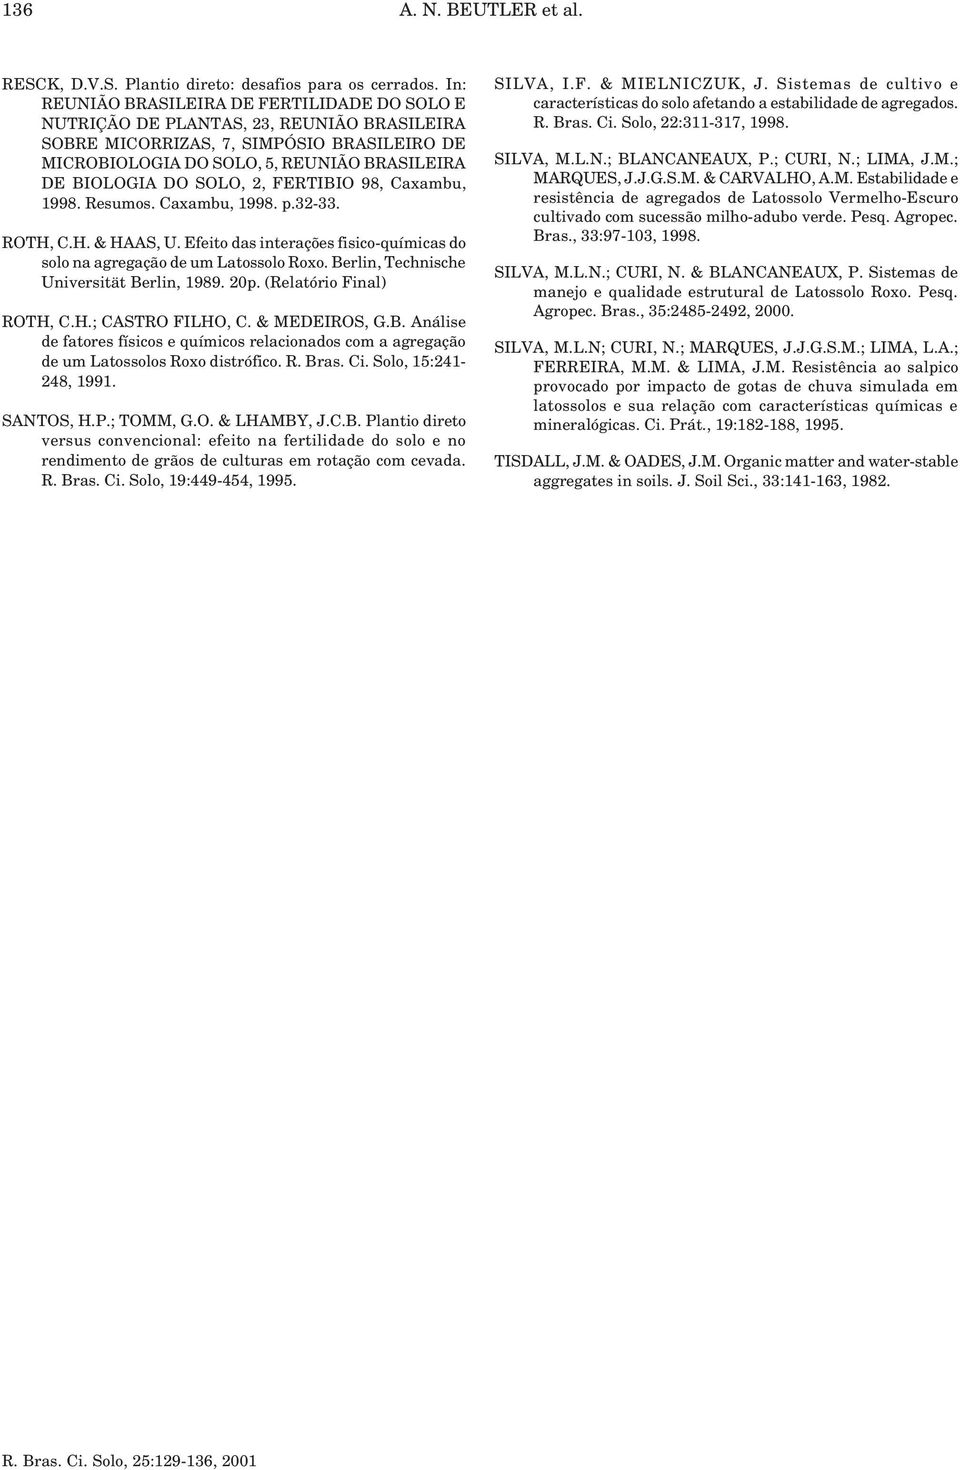 SOLO, 2, FERTIBIO 98, Cxmu, 1998. Resumos. Cxmu, 1998. p.32-33. ROTH, C.H. & HAAS, U. Efeito ds interções fisico-químics do solo n gregção de um Ltossolo Roxo.